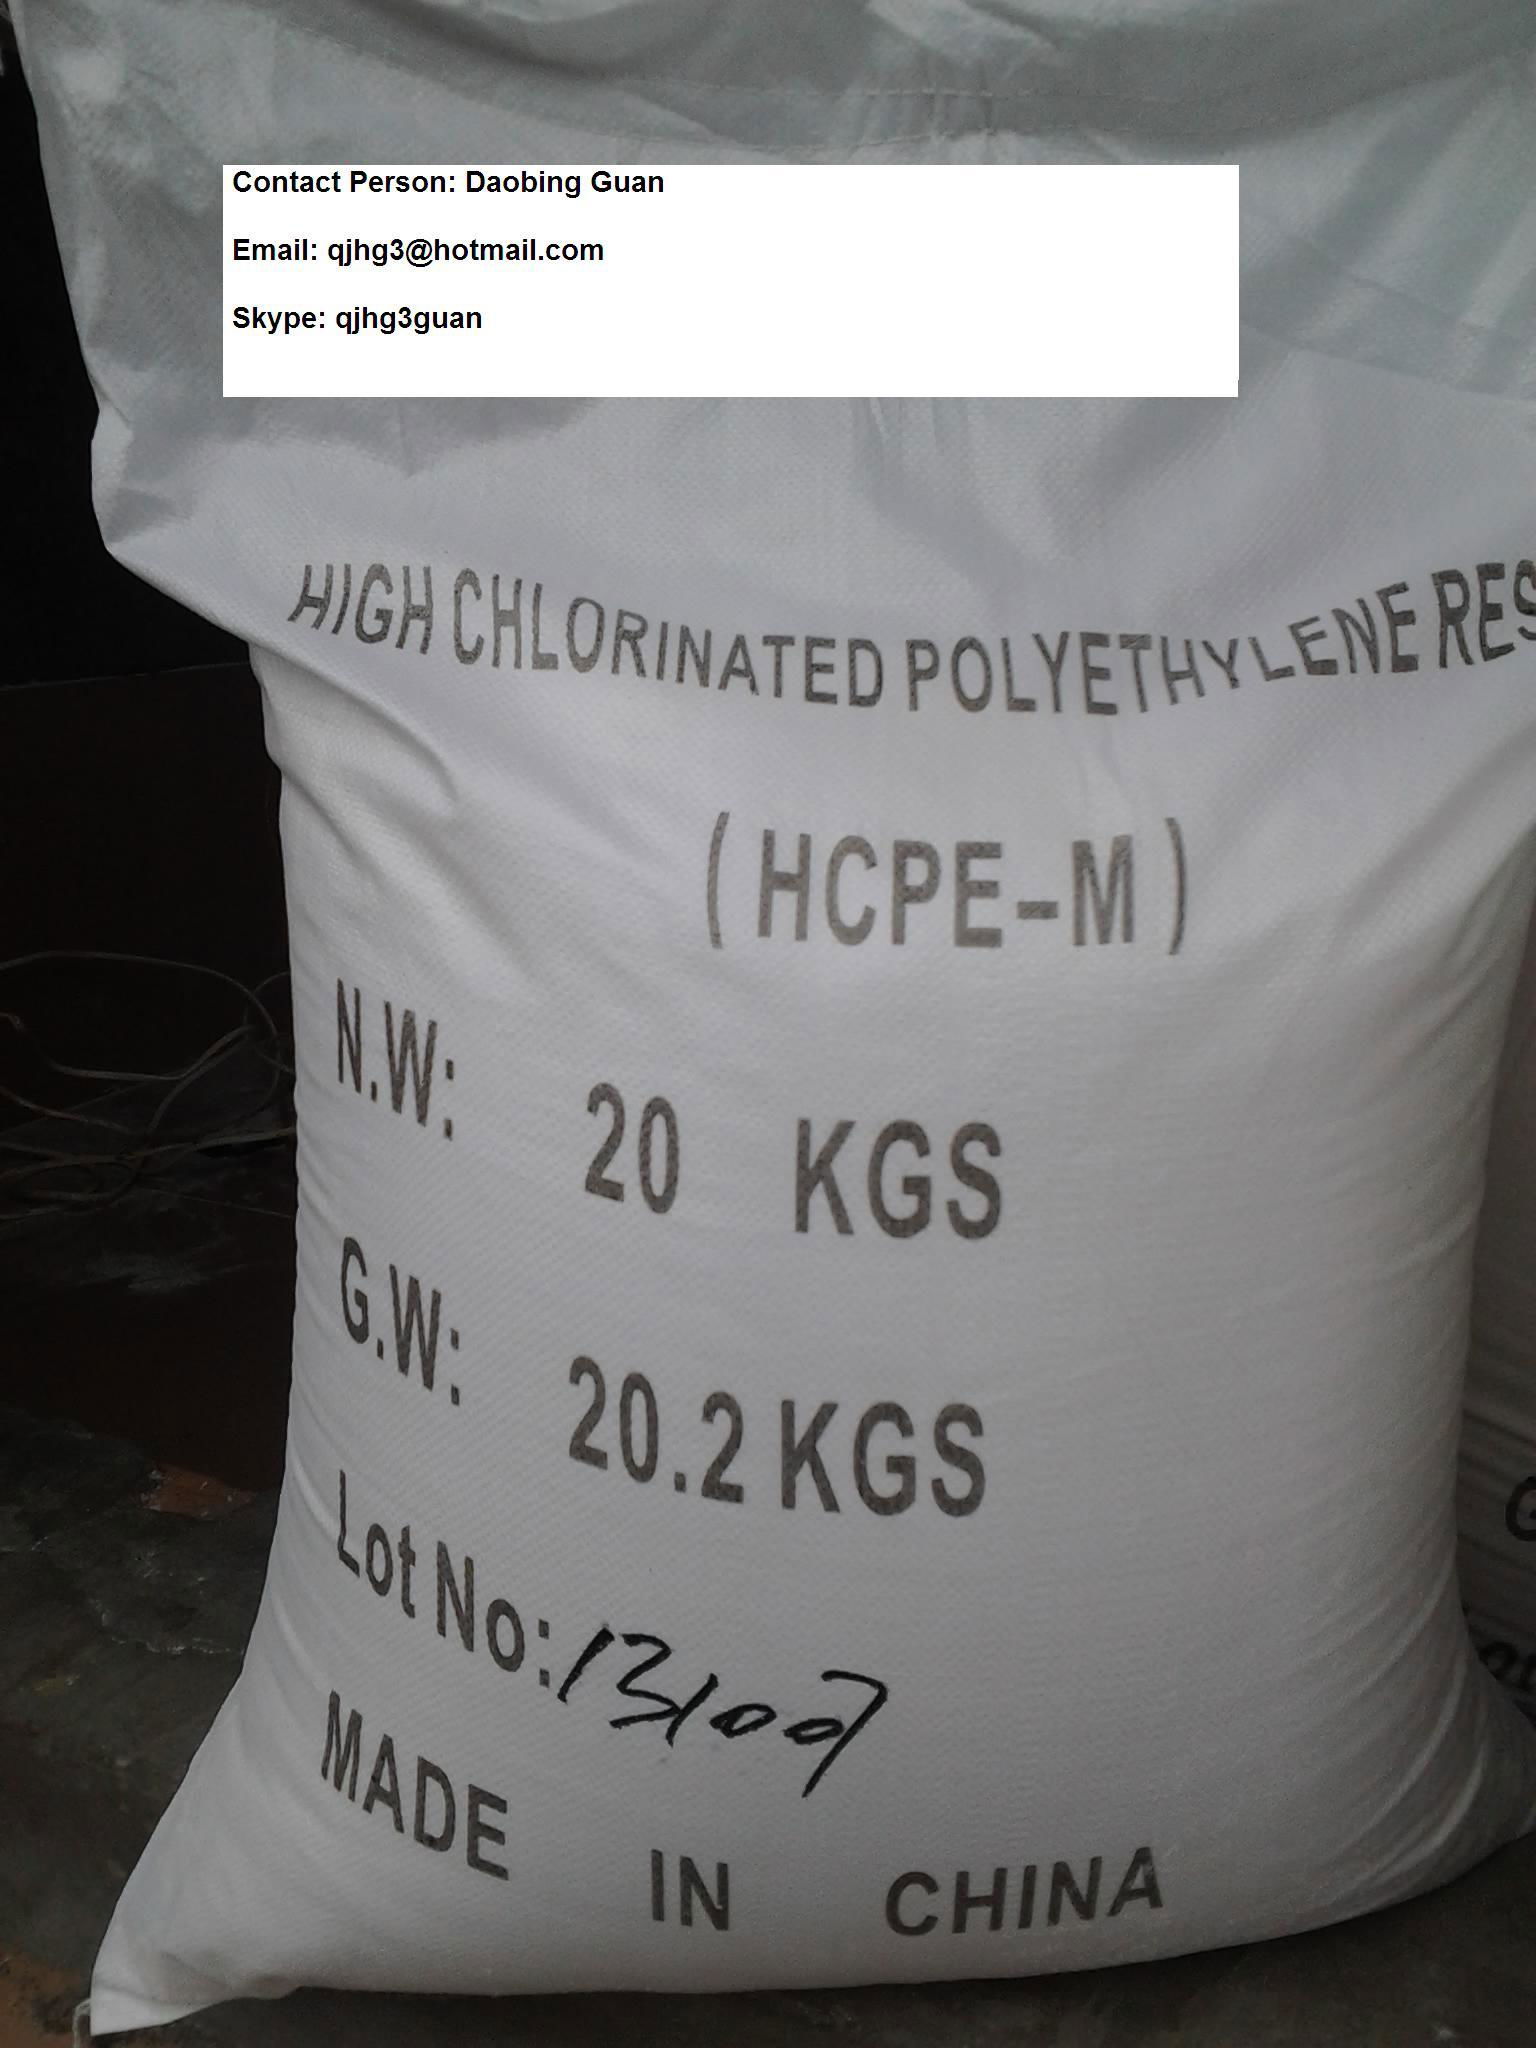 高氯化聚乙烯樹脂（中粘度級）（HCPE-M）